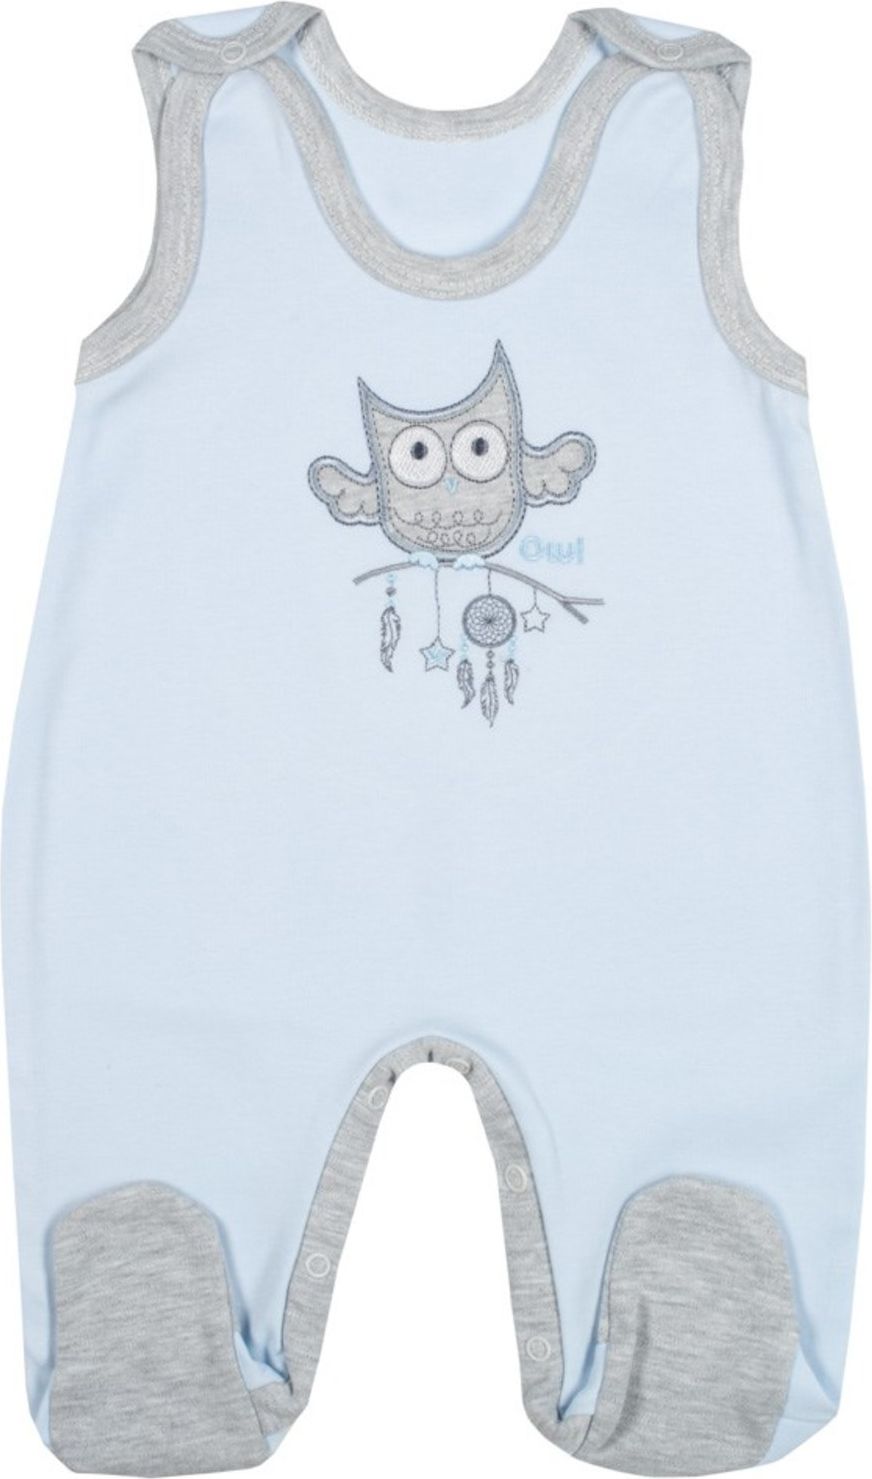 Kojenecké dupačky New Baby Owl modré - Kojenecké dupačky New Baby Owl modré - obrázek 1